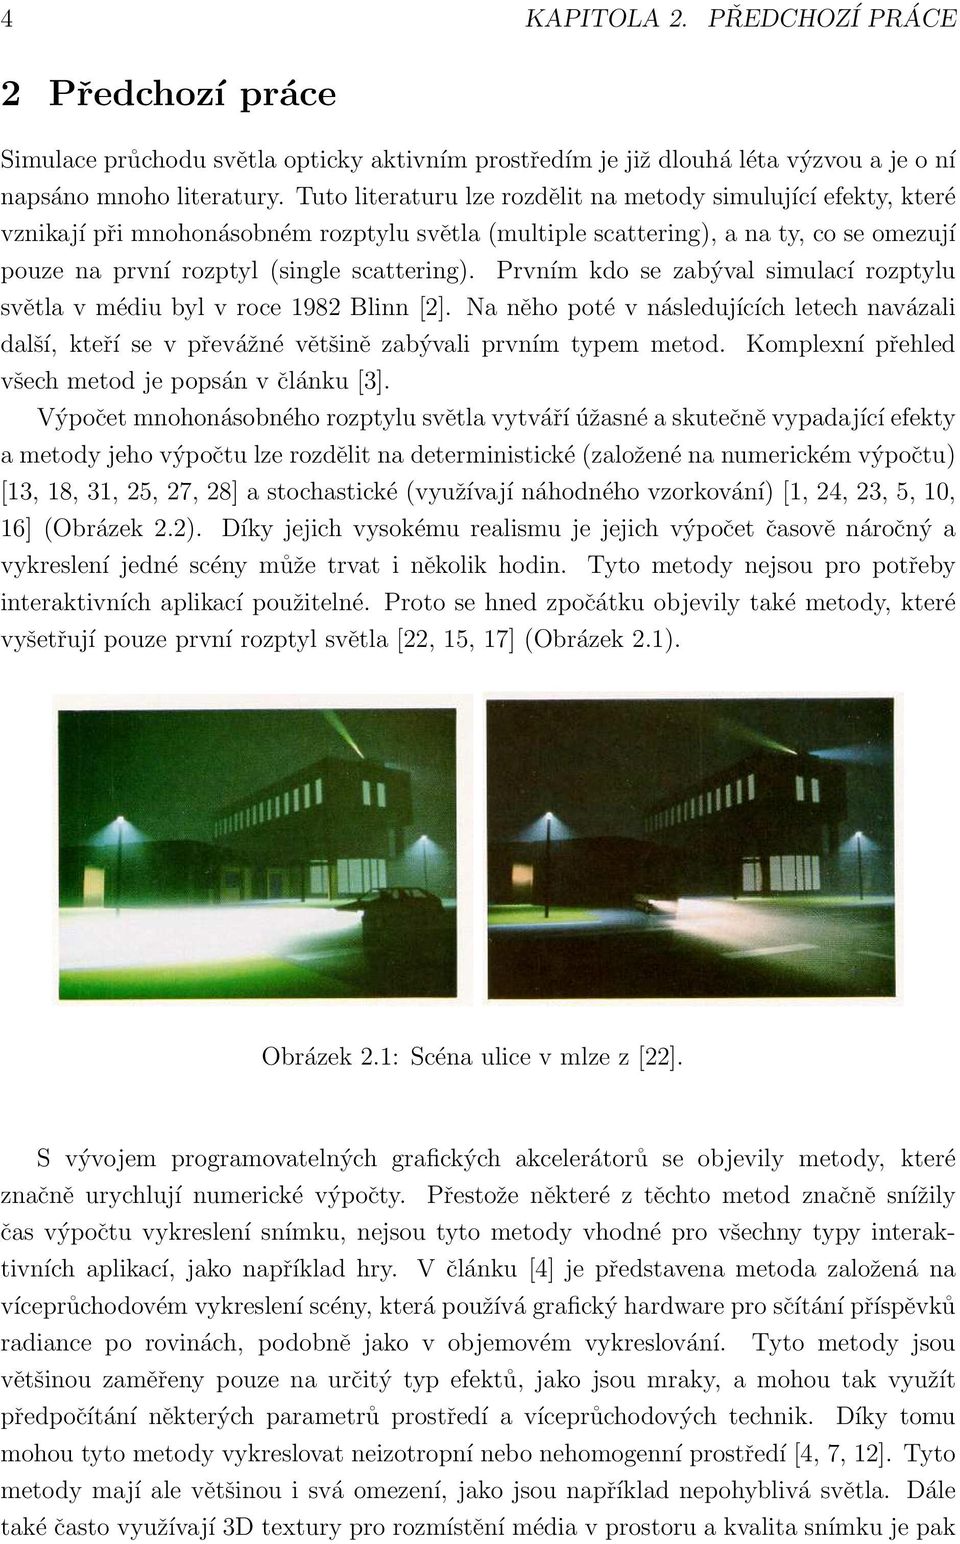 Prvním kdo se zabýval simulací rozptylu světla v médiu byl v roce 1982 Blinn [2]. Na něho poté v následujících letech navázali další, kteří se v převážné většině zabývali prvním typem metod.